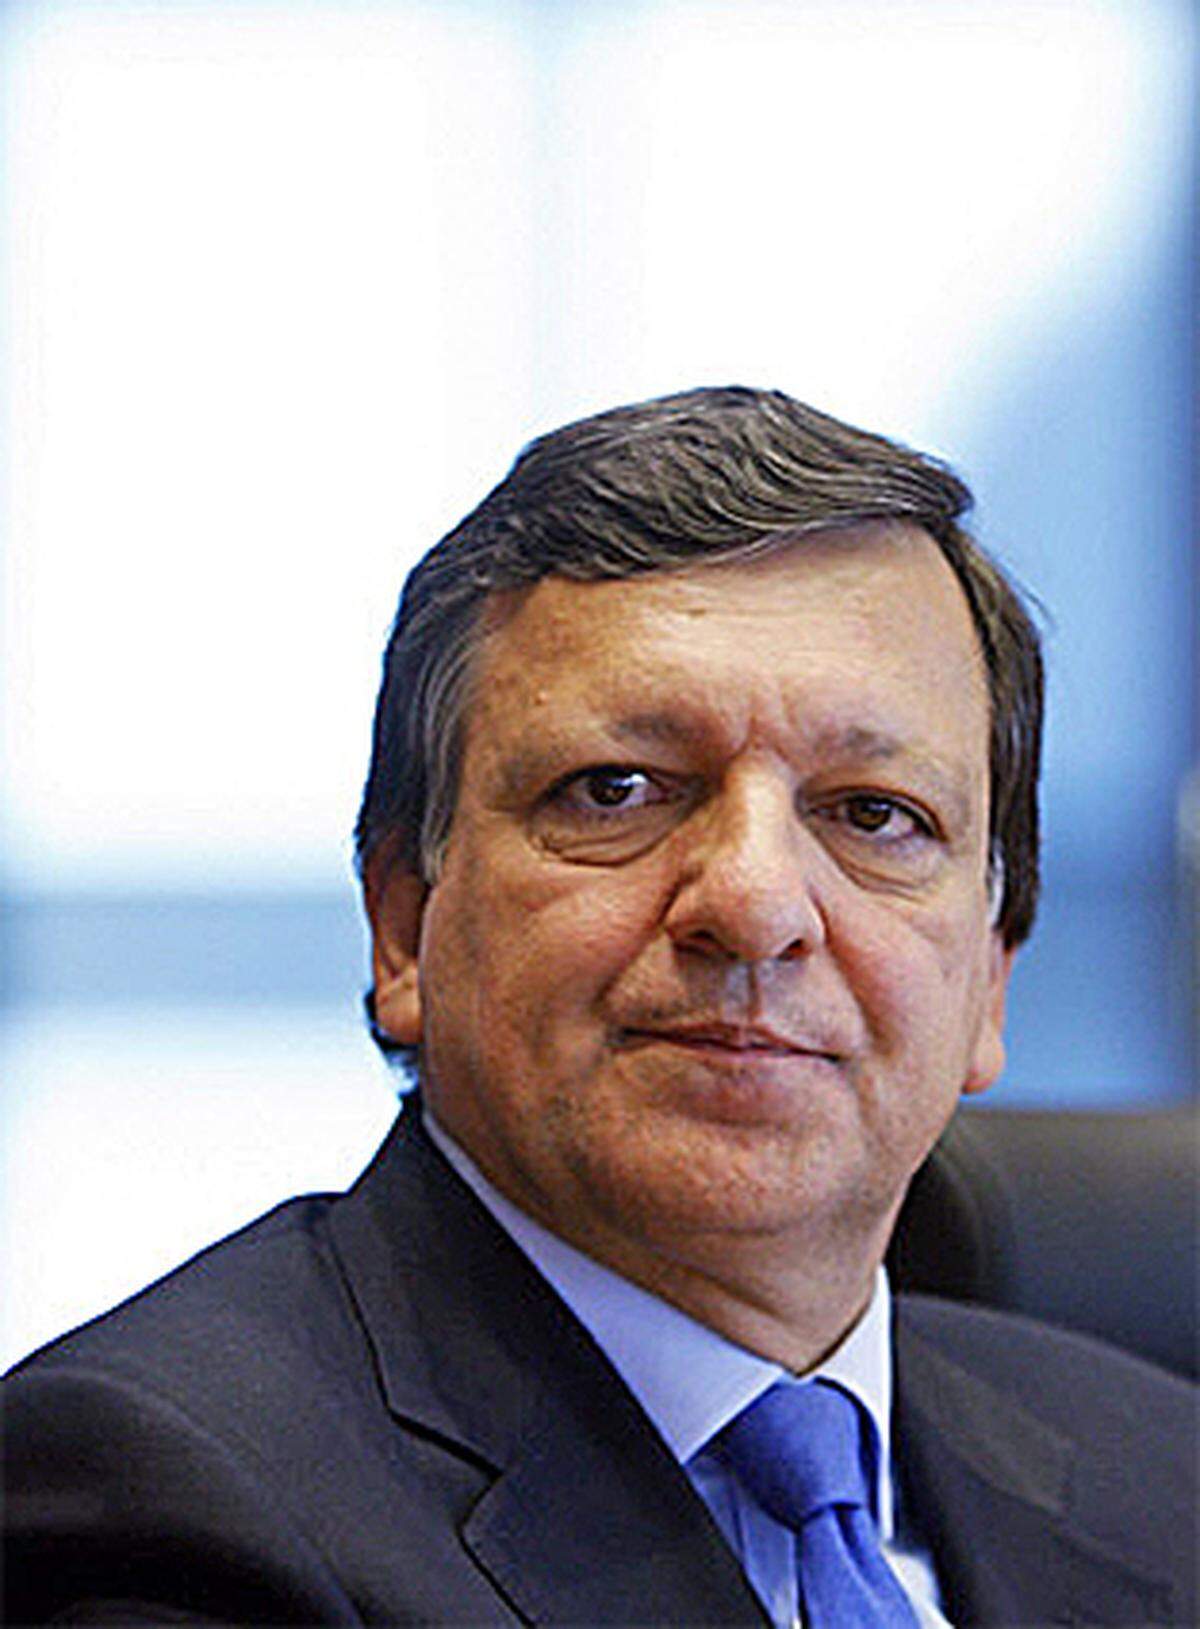 Jose Manuel Barroso ist standfester als viele glaubten. Attacken, er habe die Finanzkrise nicht kommen sehen und keine europäische Strategie dagegen aufgeboten, prallen an dem 53-jährigen EU-Kommissionspräsidenten ab. Er verweist auf die zahlreichen Initiativen seiner Riesenbehörde, so zum Ausbau der europäischen Finanzaufsicht. 